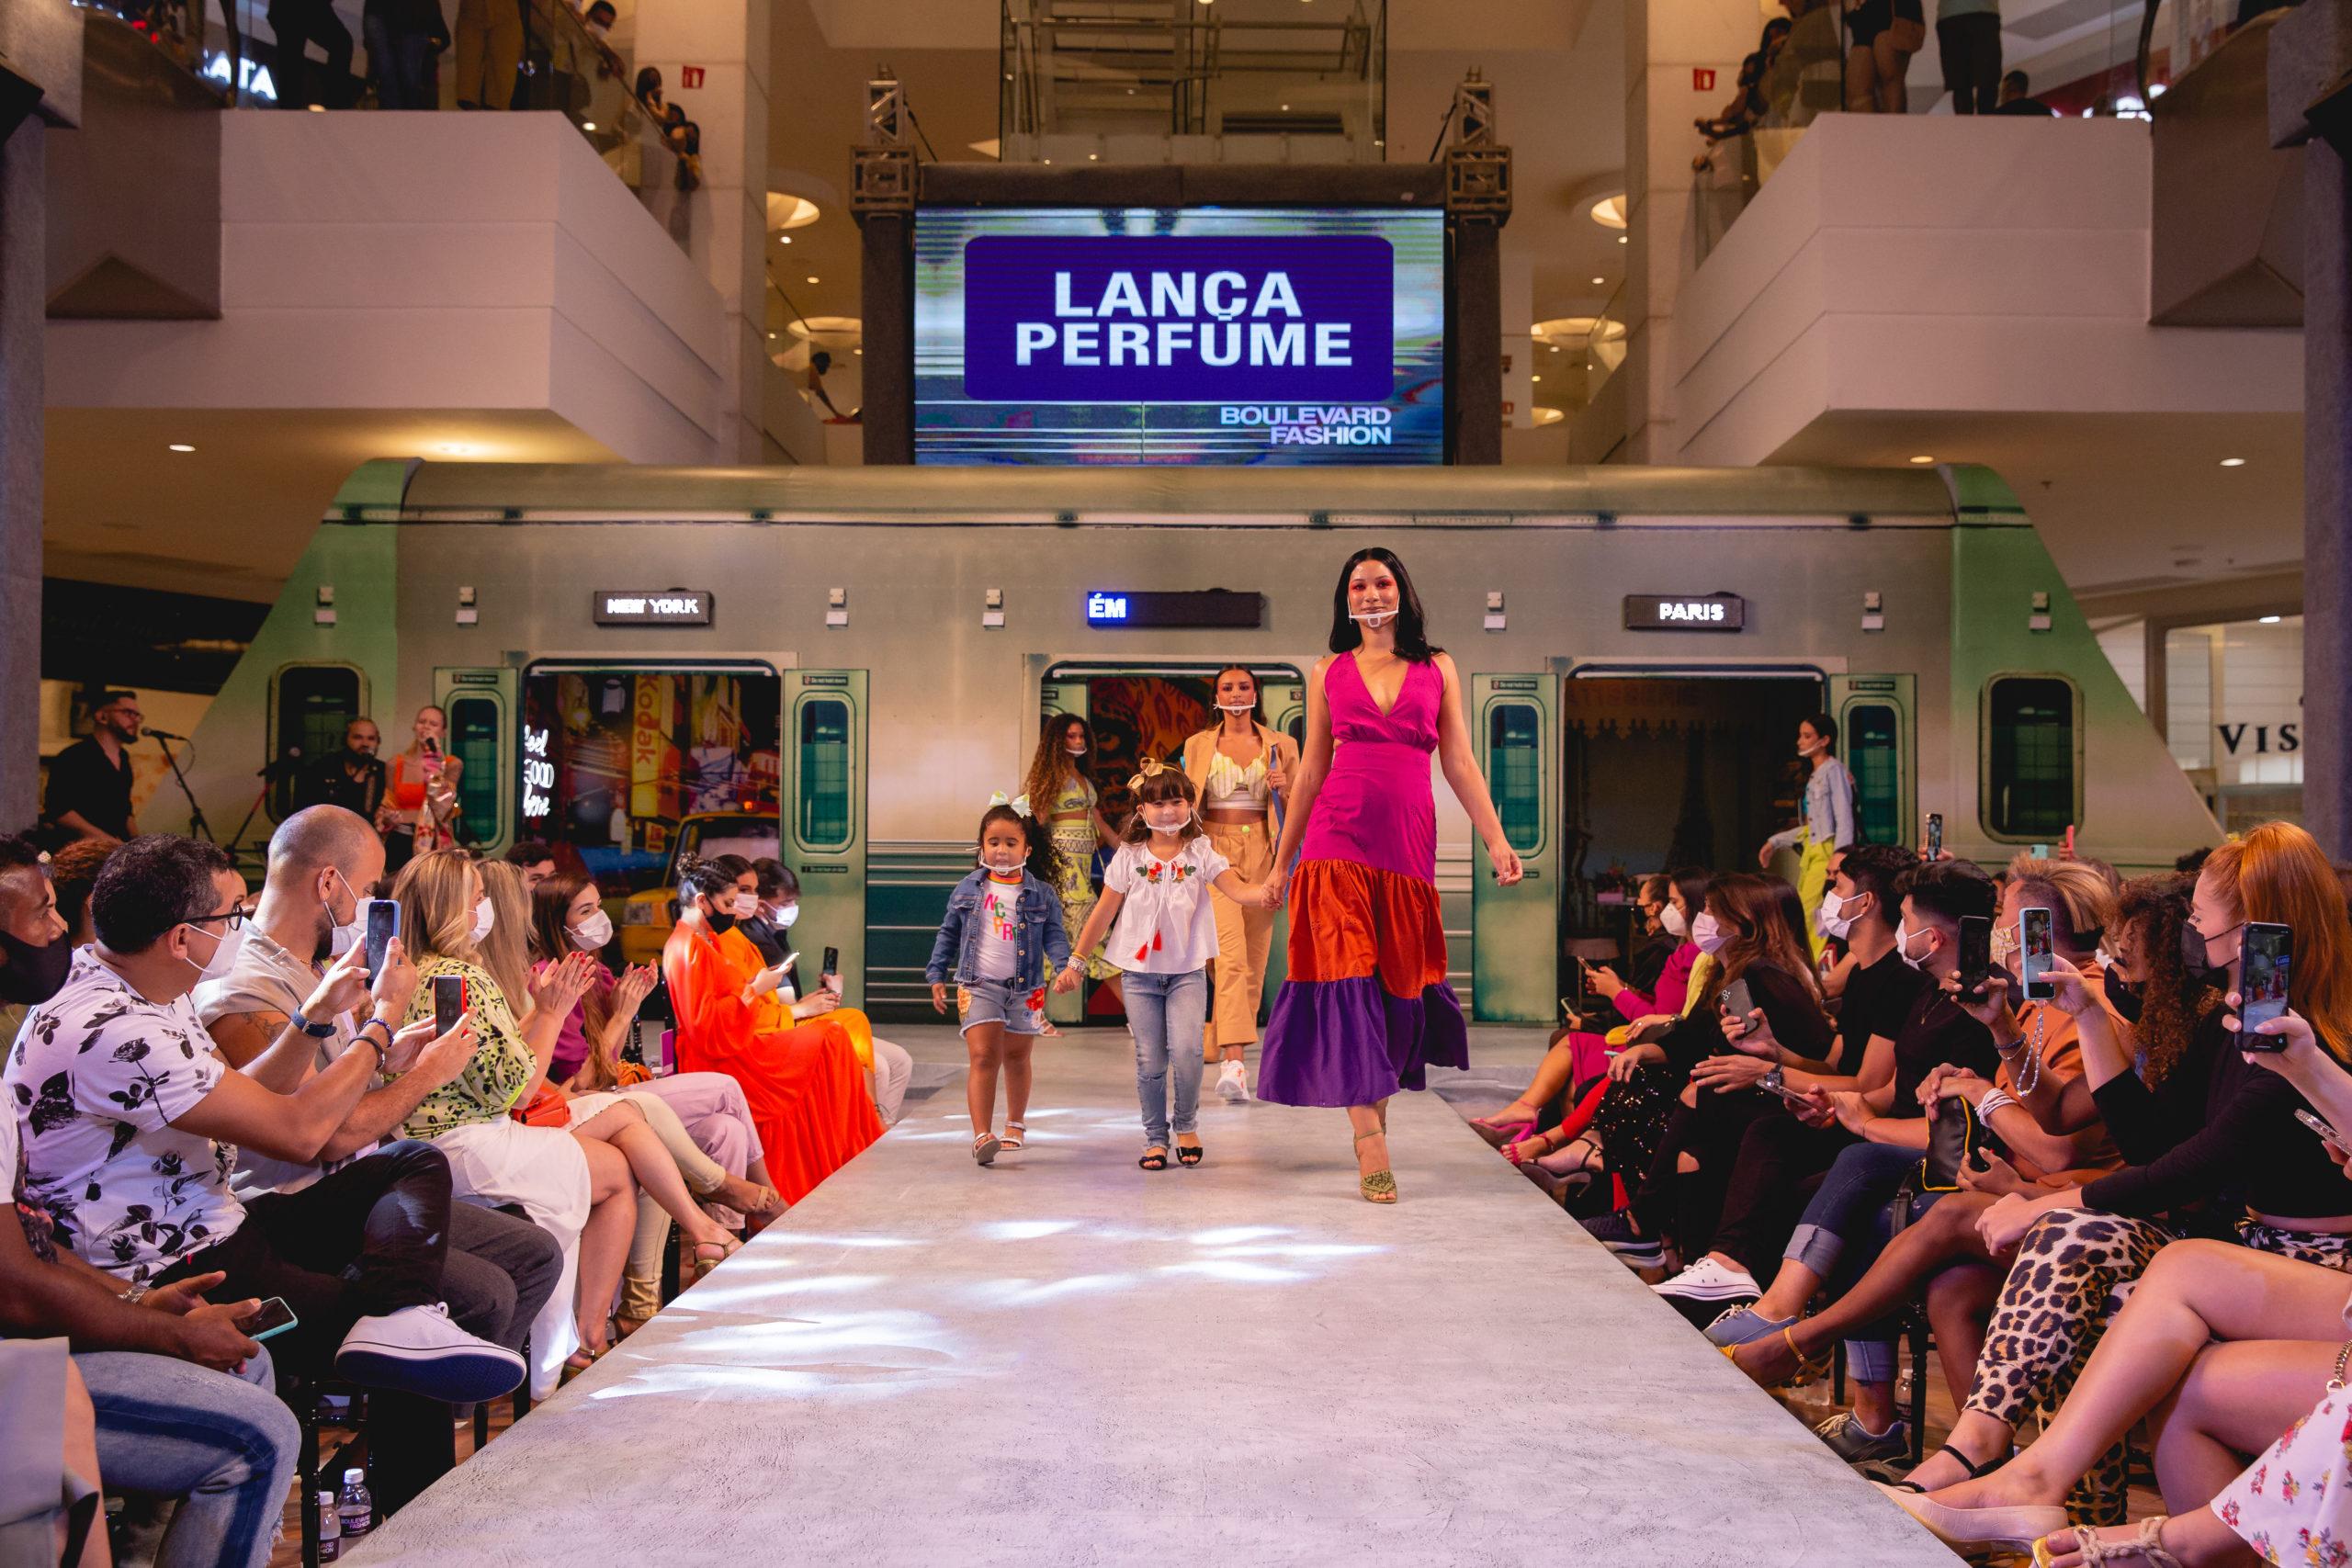 Inspirado nas tendências internacionais, evento de moda apresenta a coleção primavera-verão em Belém 